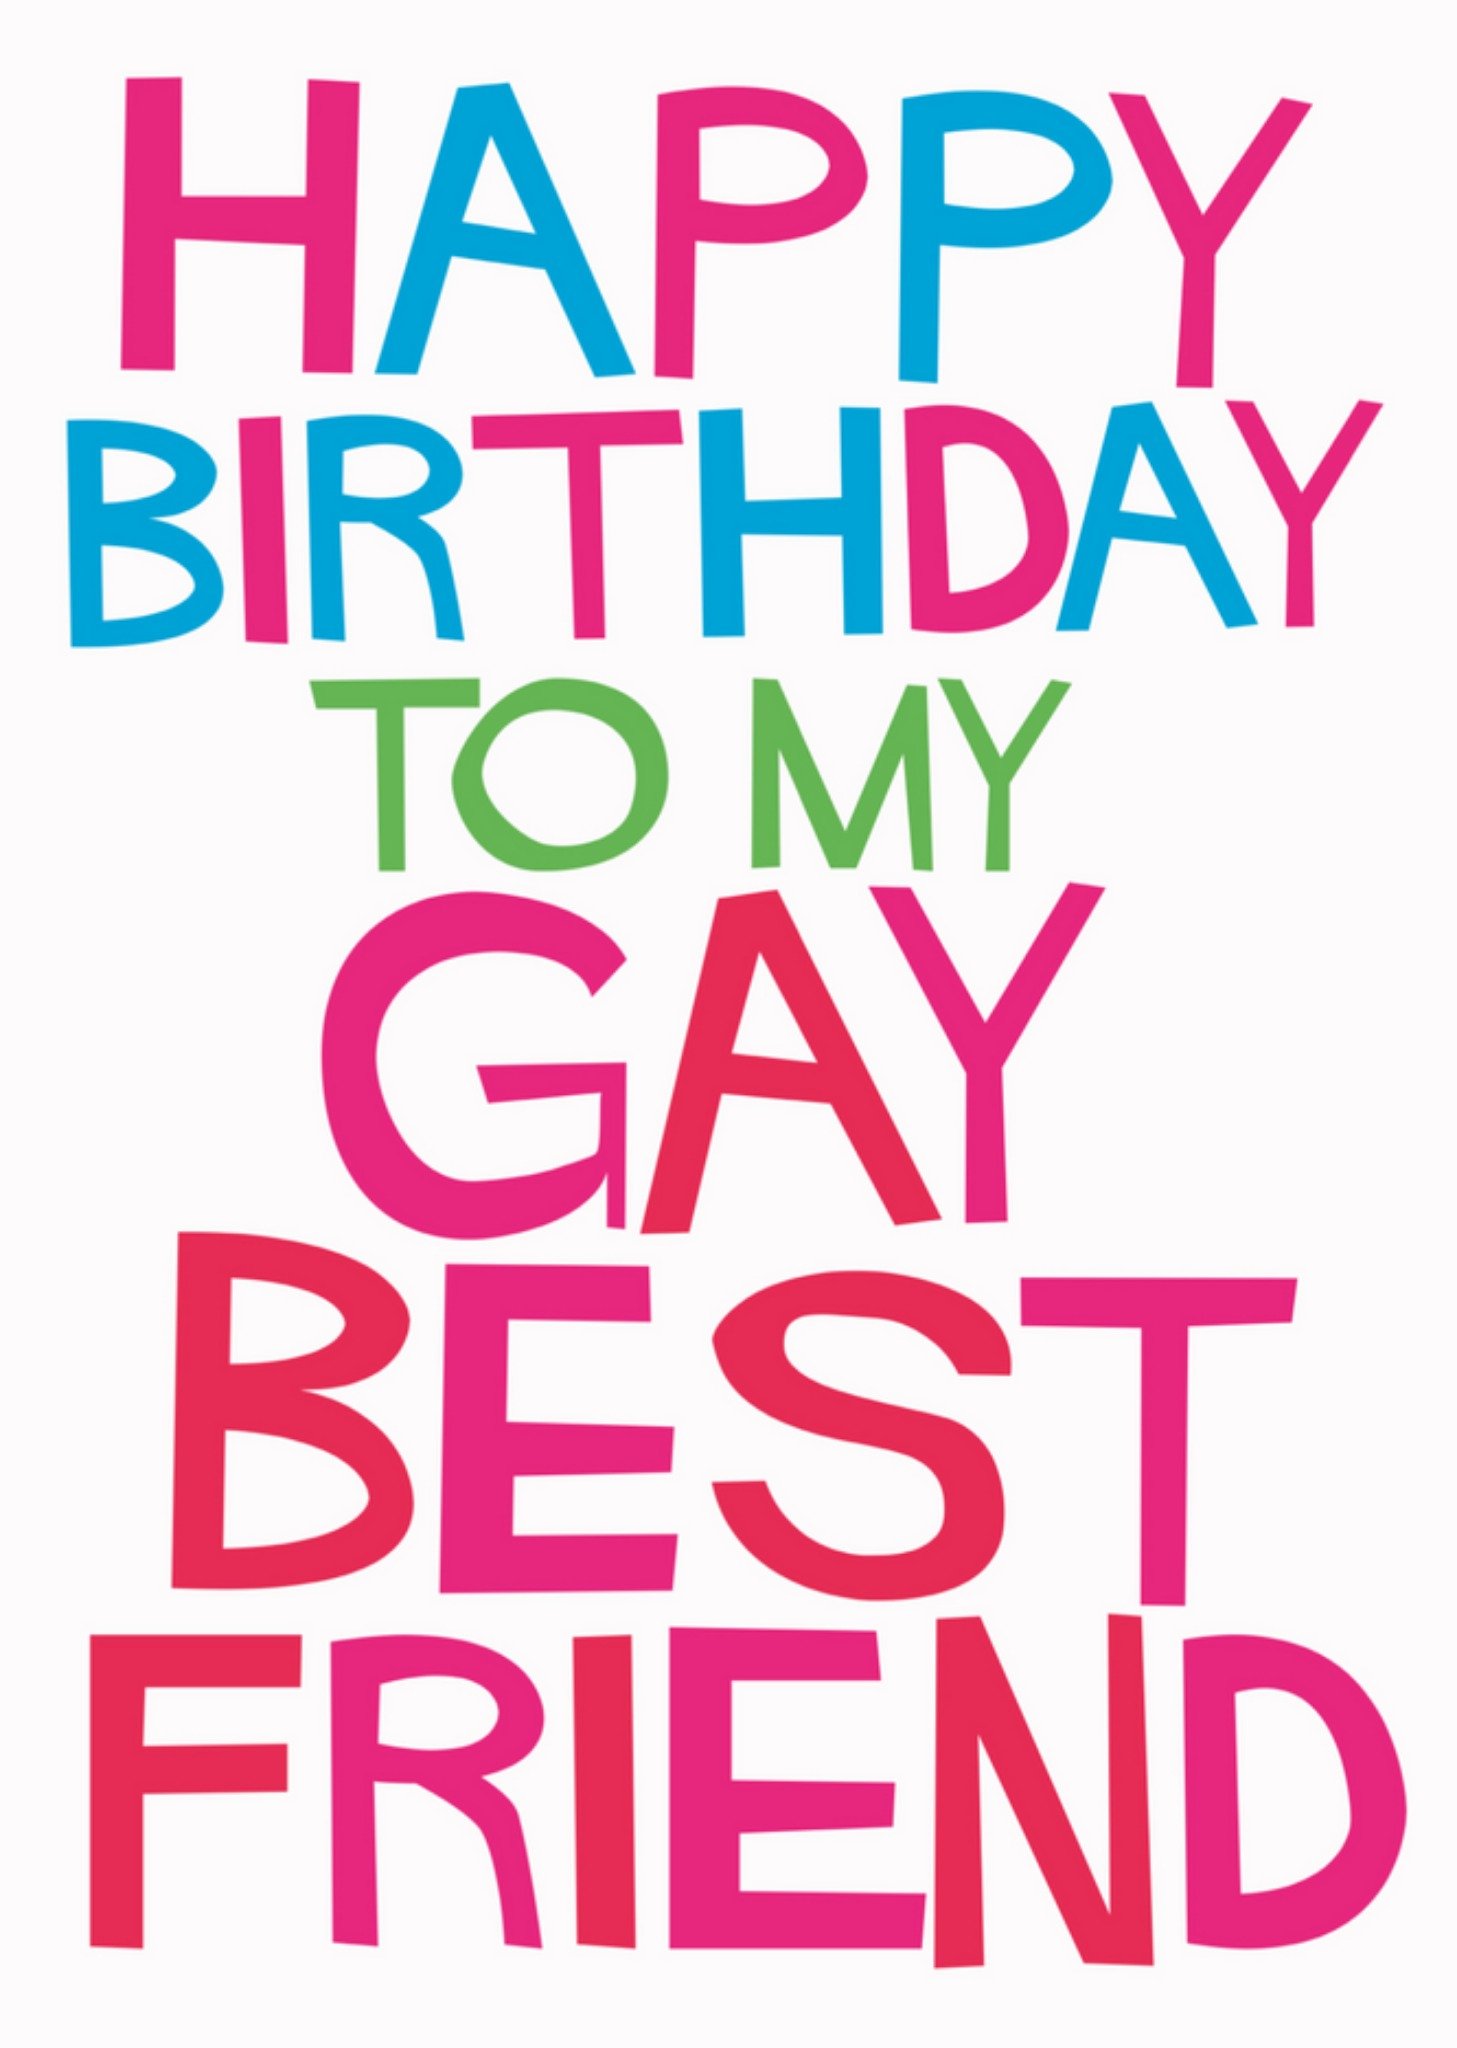 Dean Morris - Verjaardagskaart - gay - bestfriend